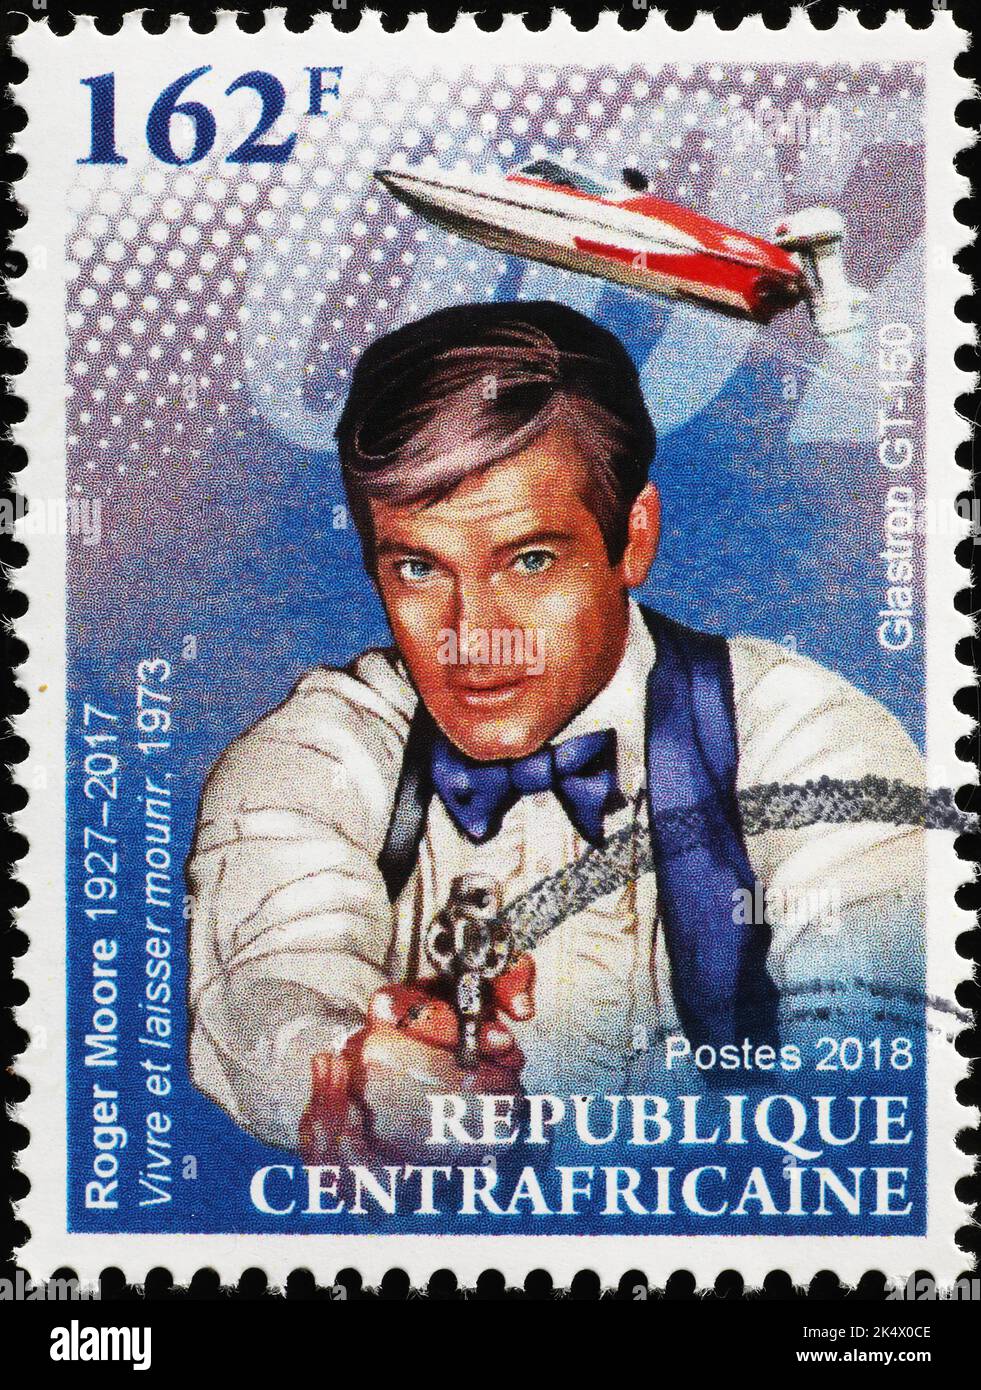 Roger Moore como James Bond en el sello de correos africano Foto de stock